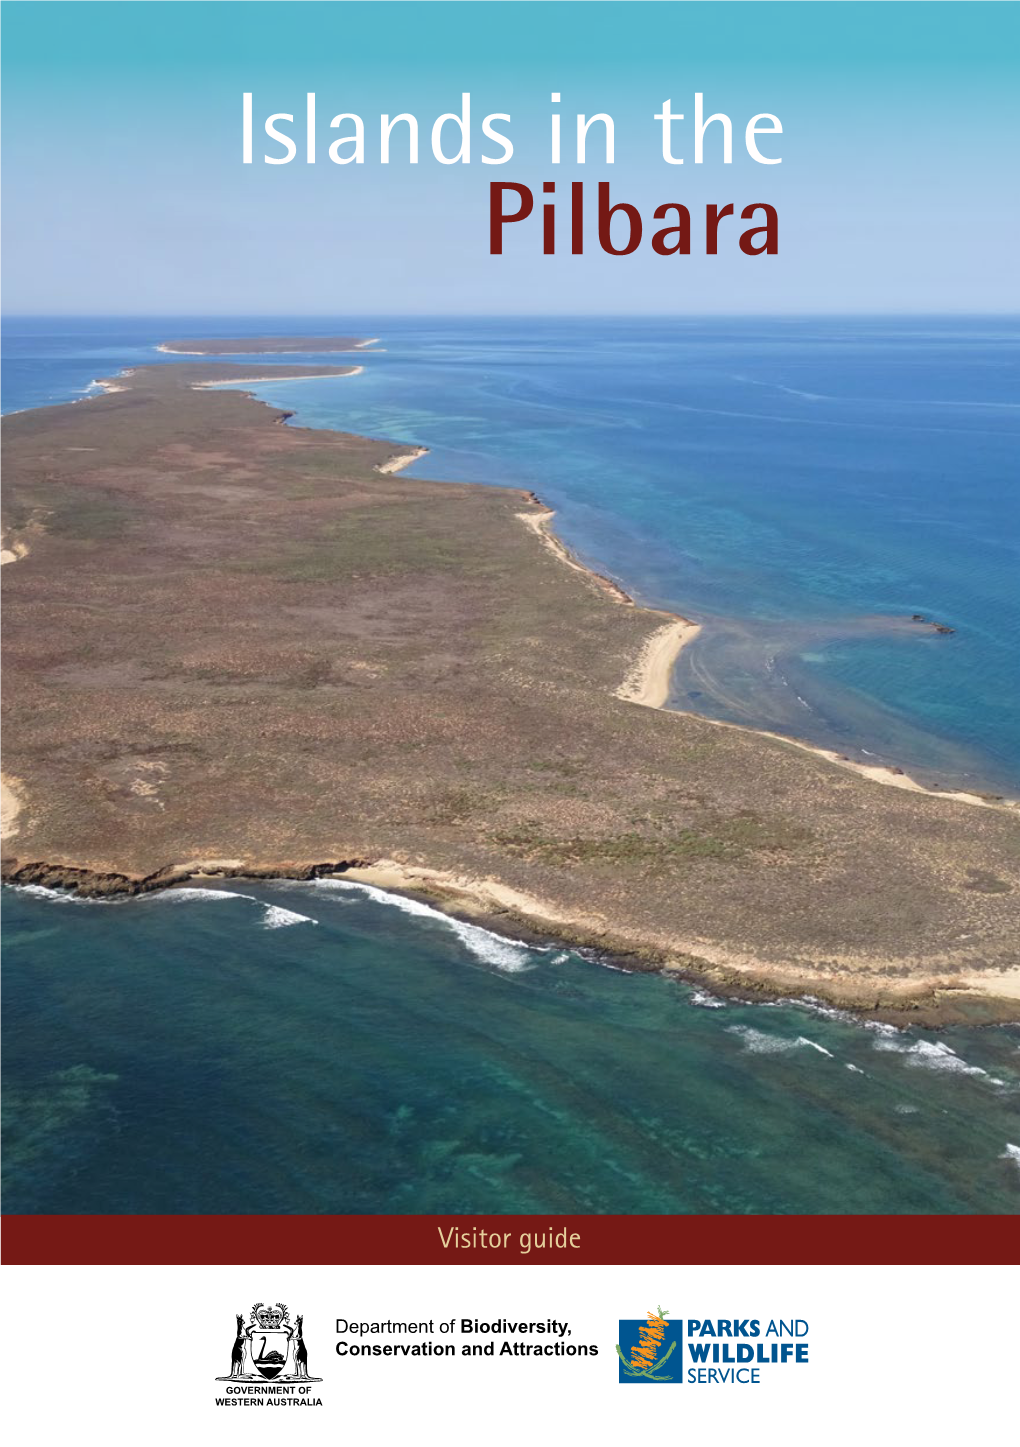 Islands in the Pilbara